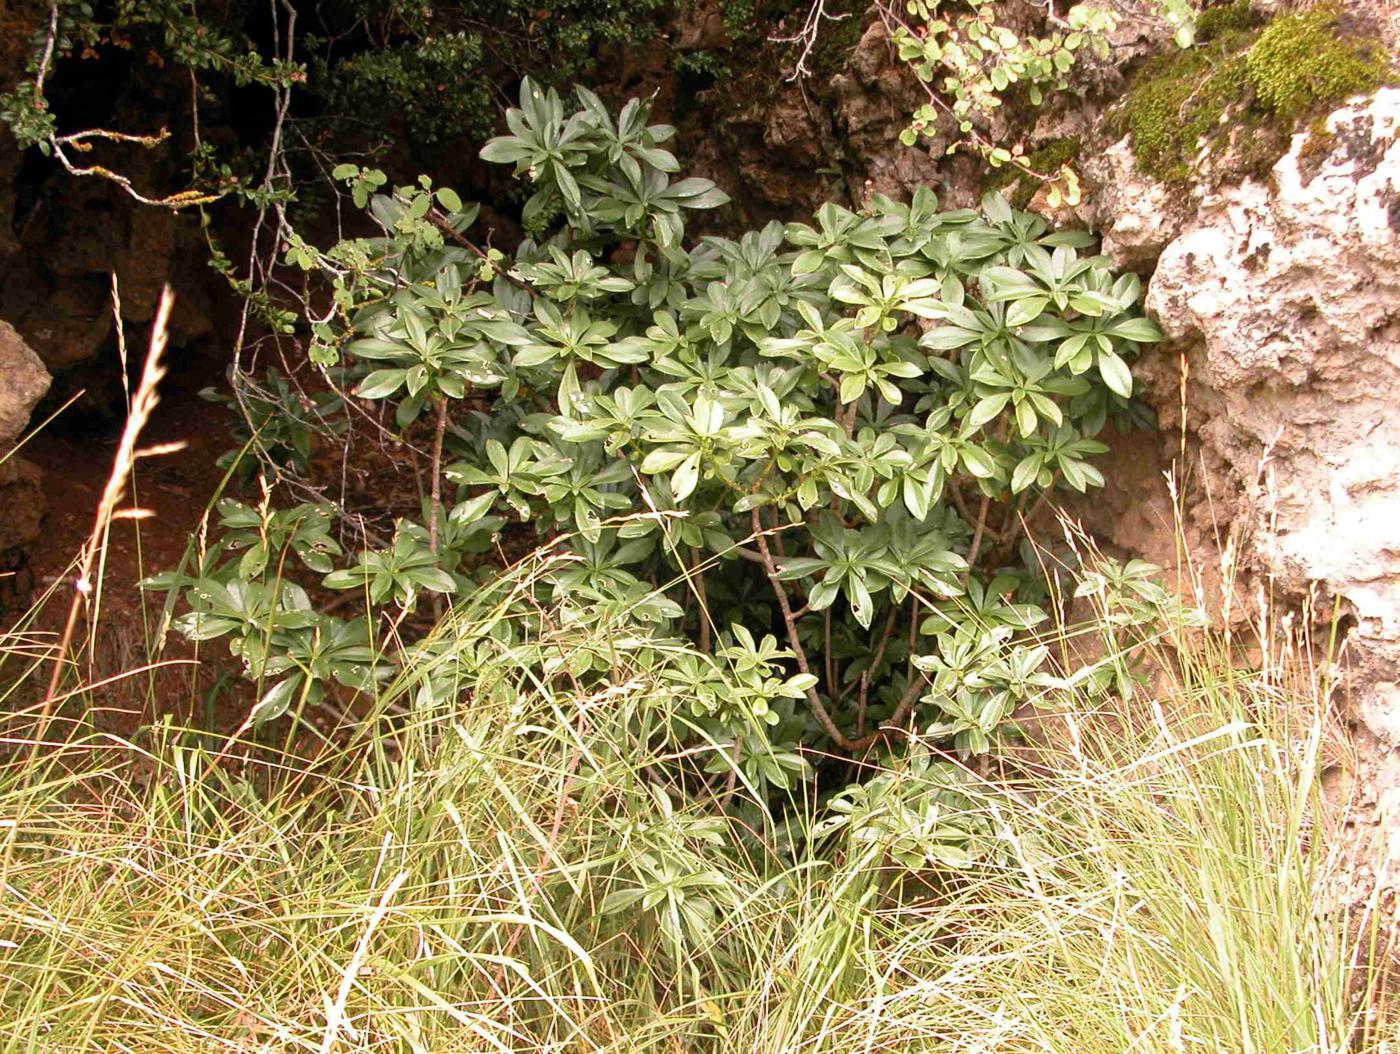 Spurge laurel plant